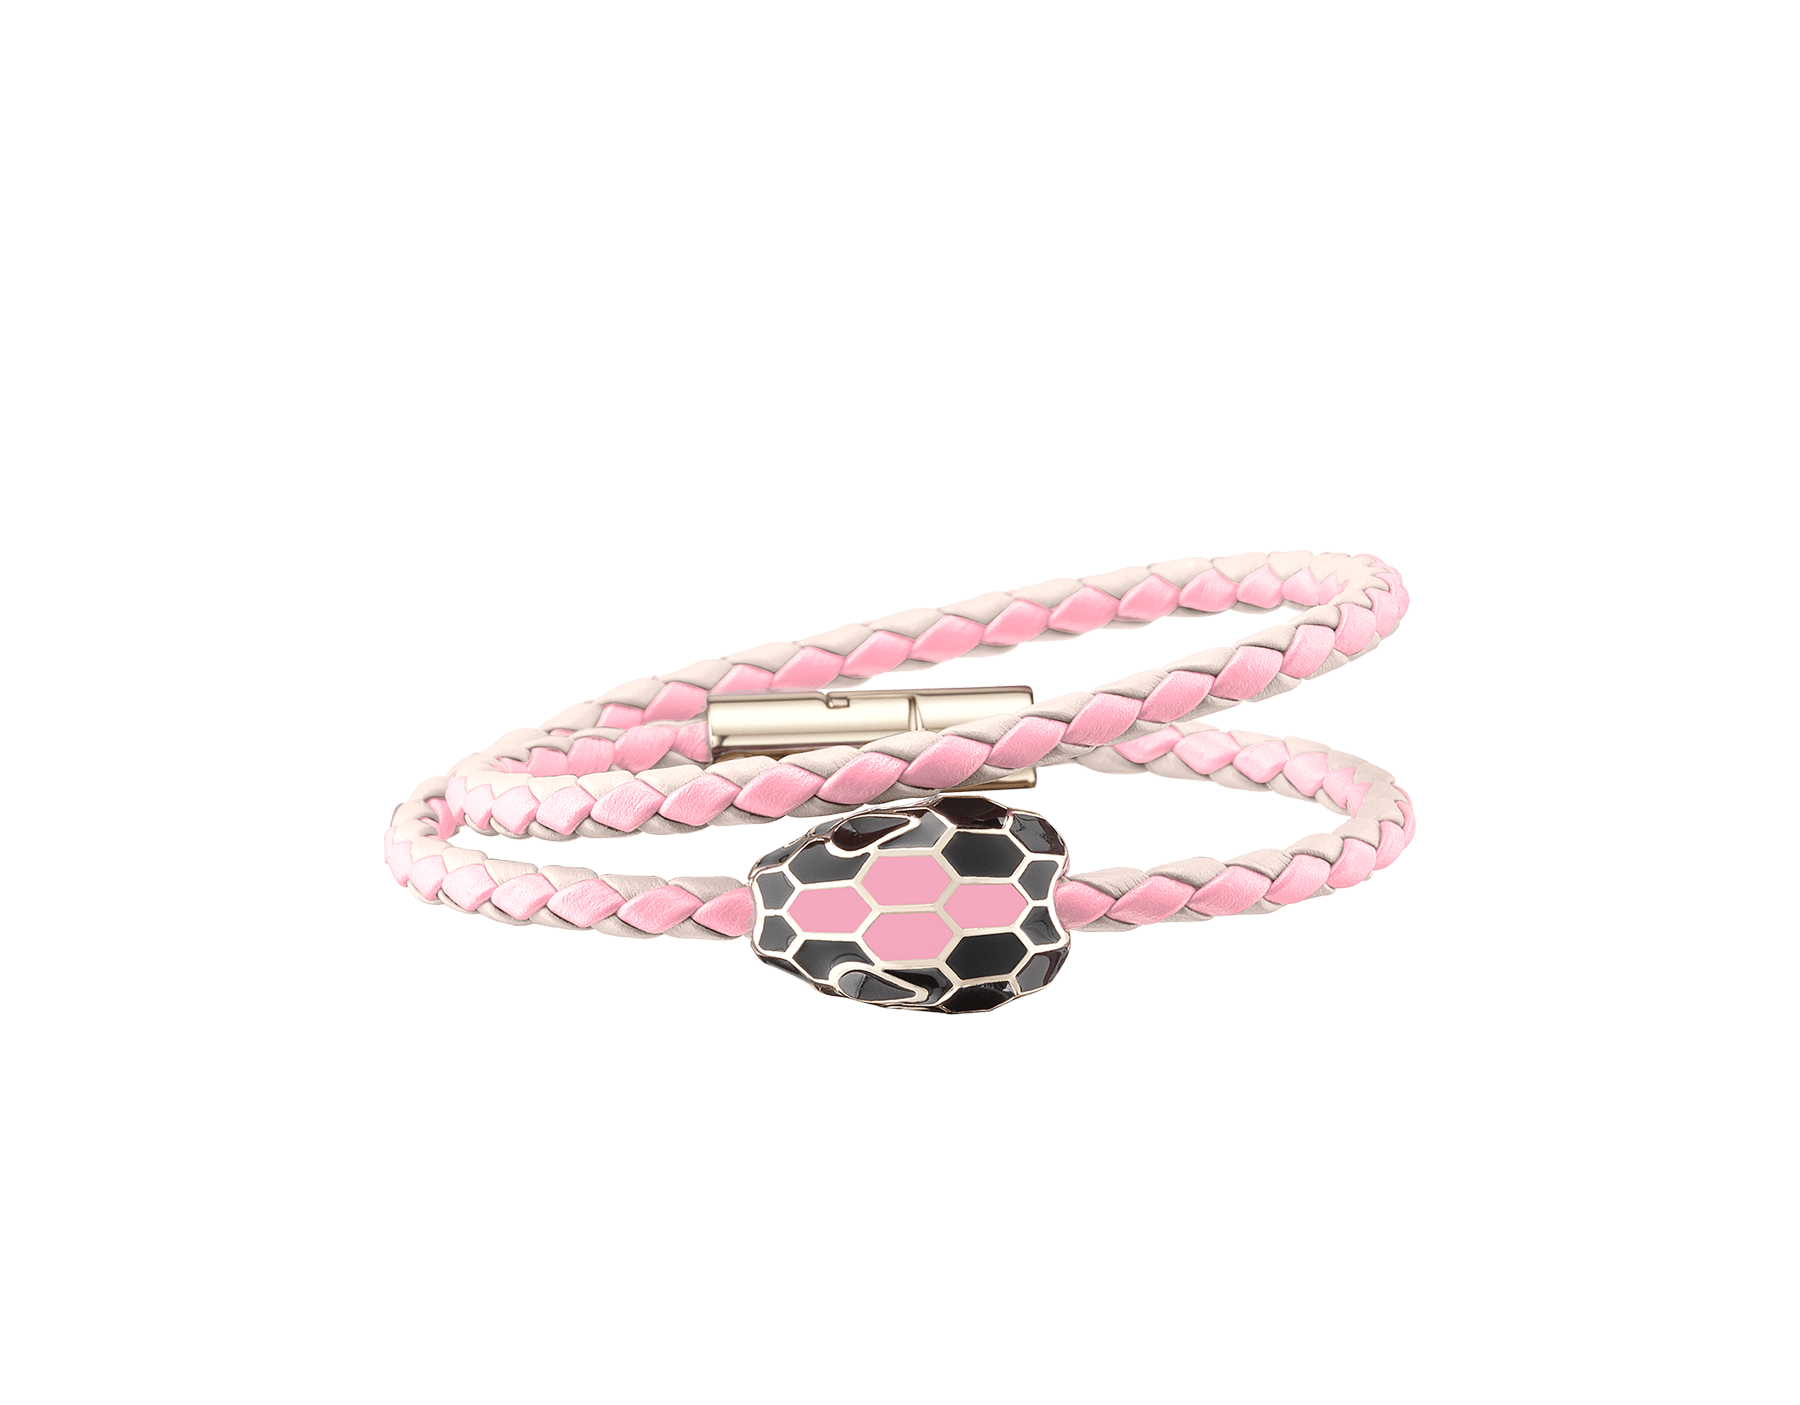 bvlgari bracelet pink